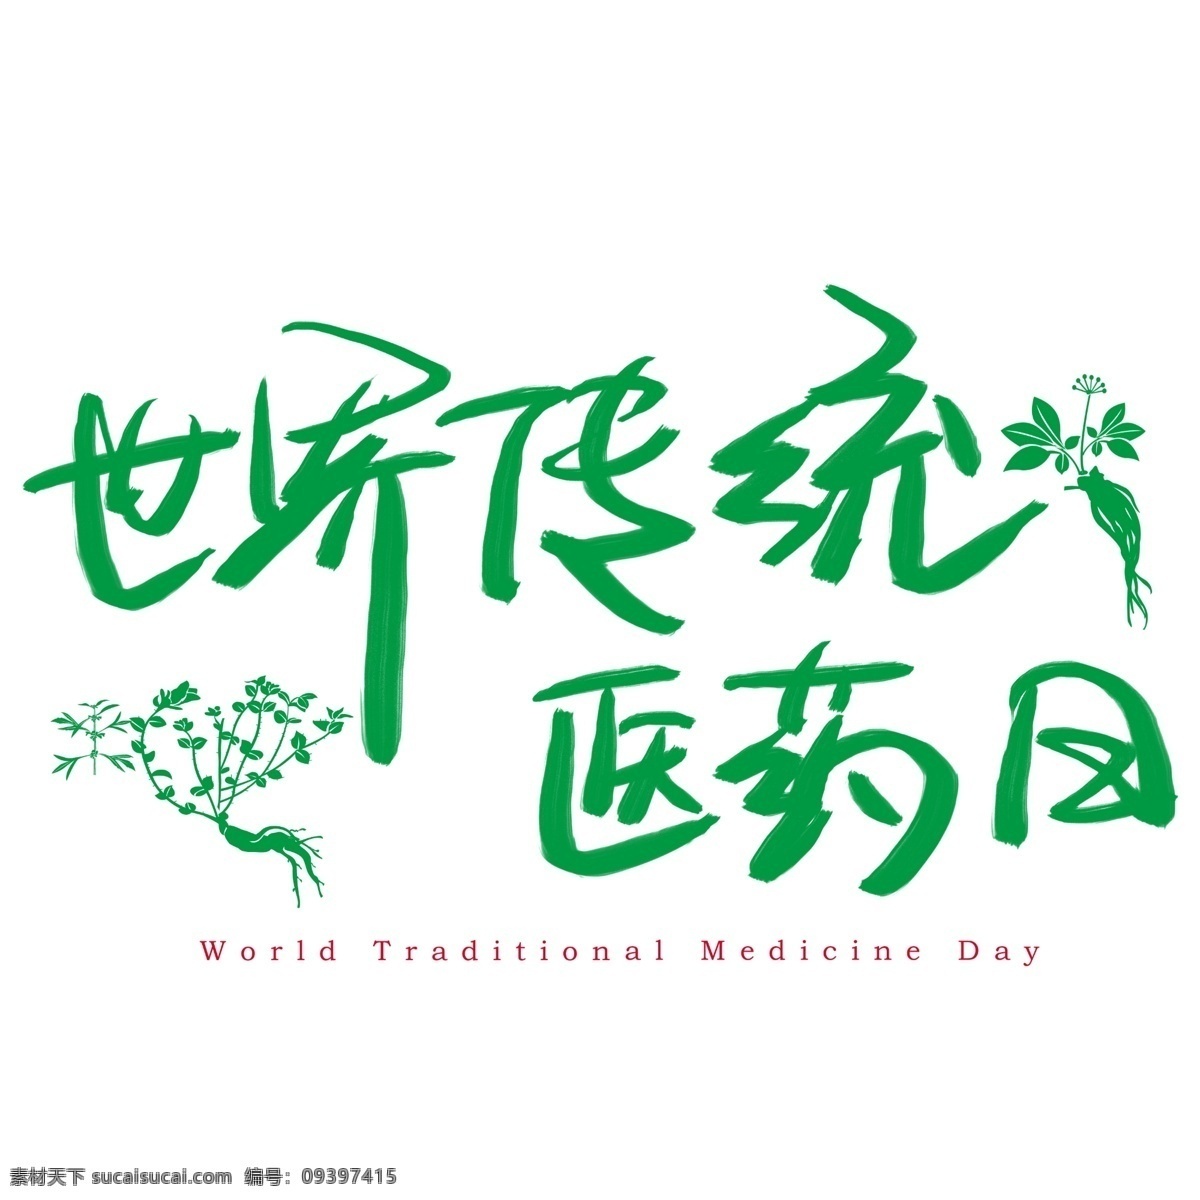 世界 传统医药 日 手写 手绘 书法艺术 字 传统 world medicine day 医药日 traditional